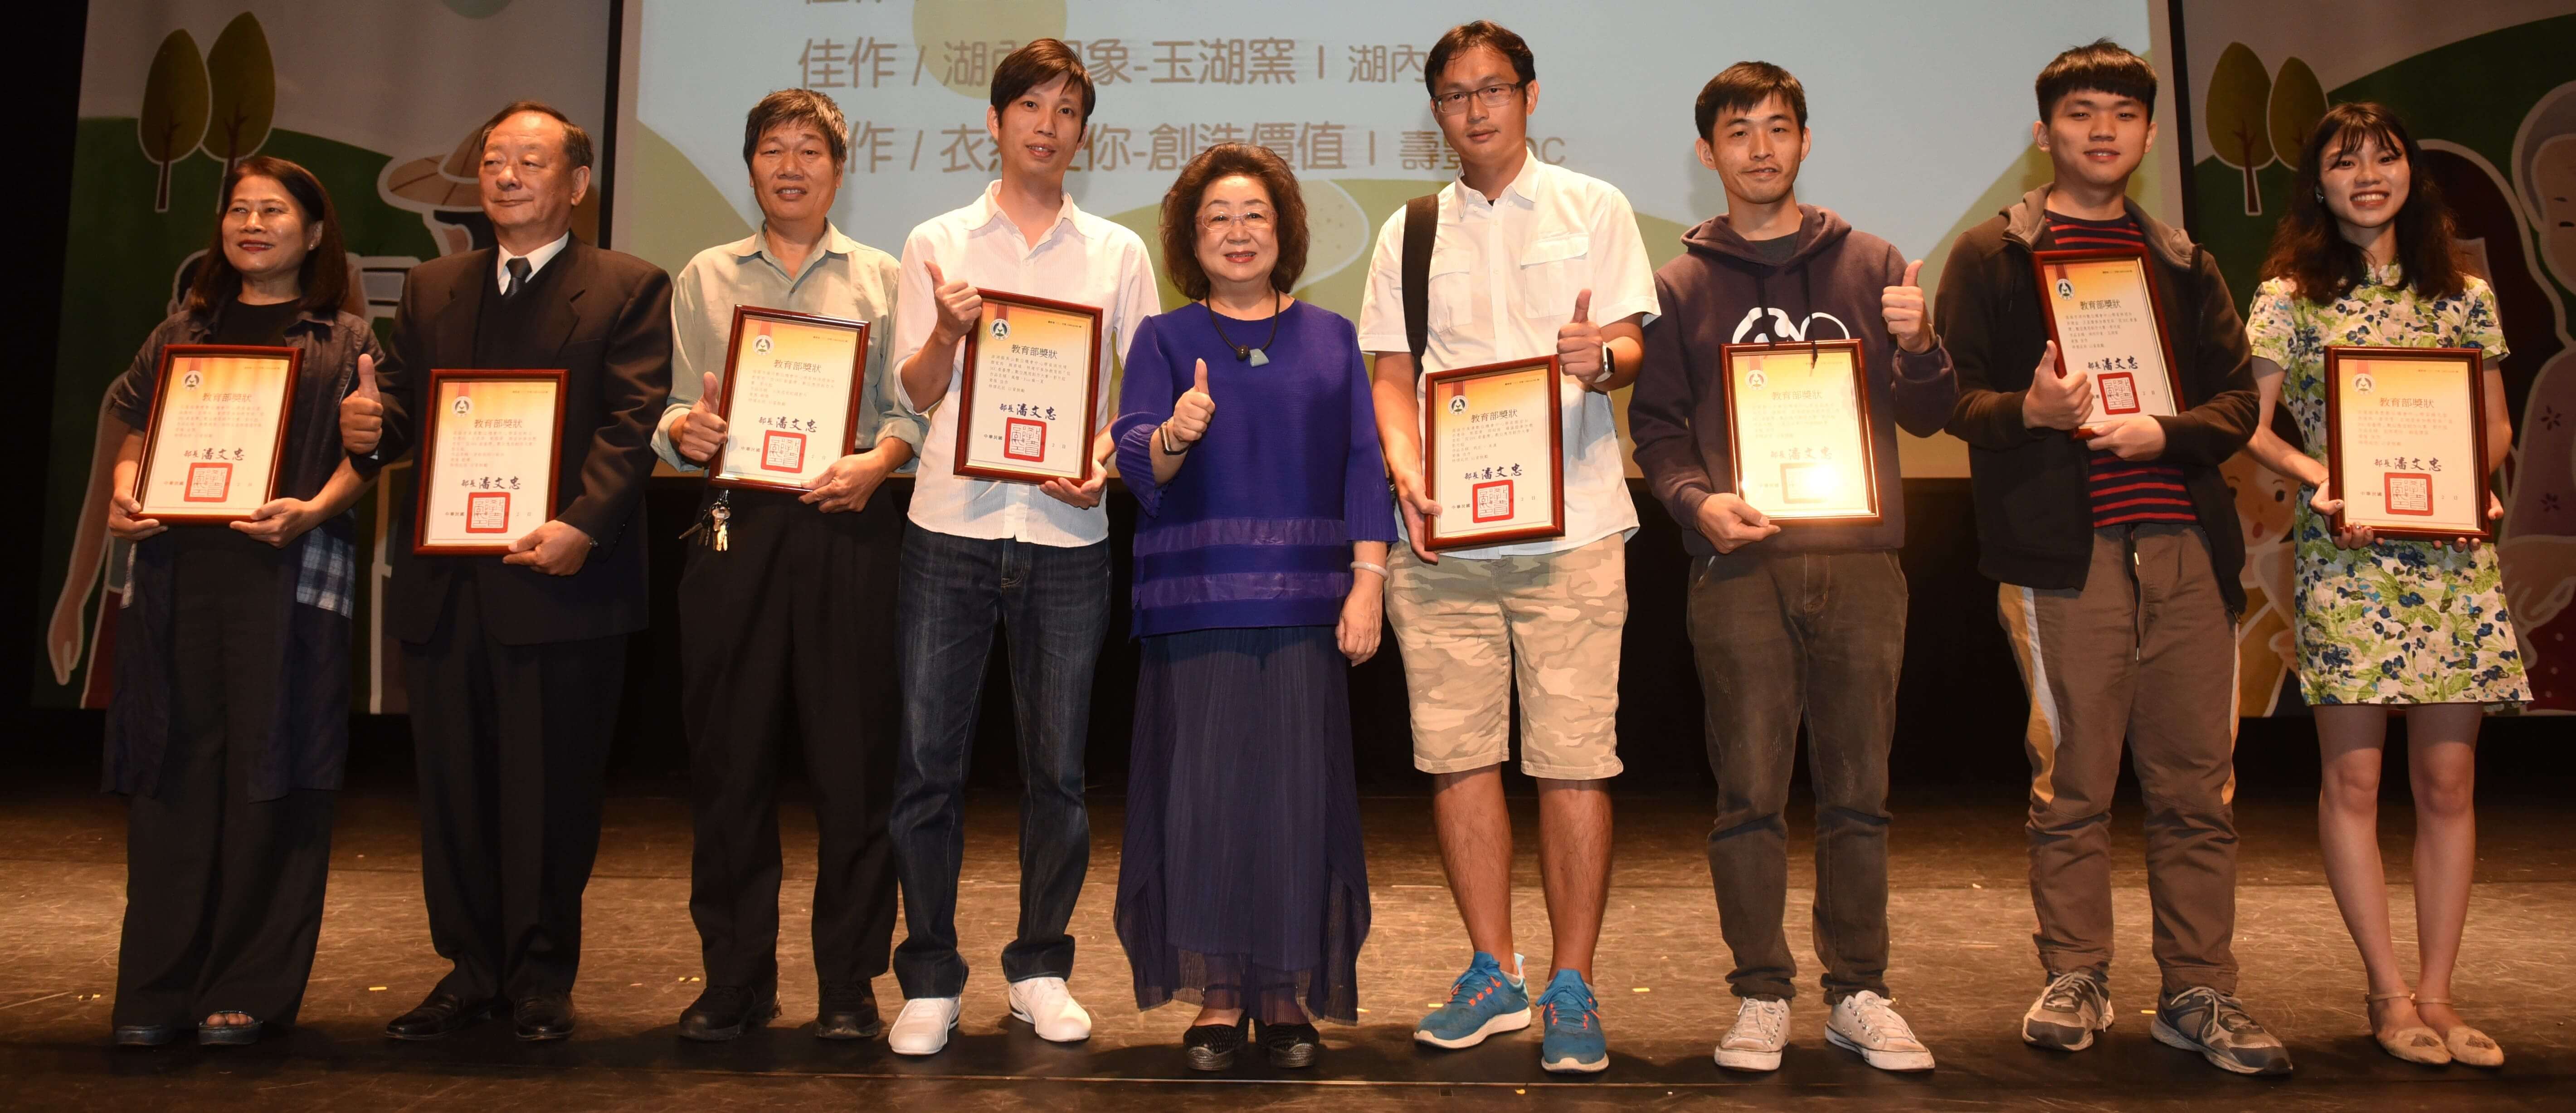 從DOC看臺灣-數位應用創作大賽影片組頒獎